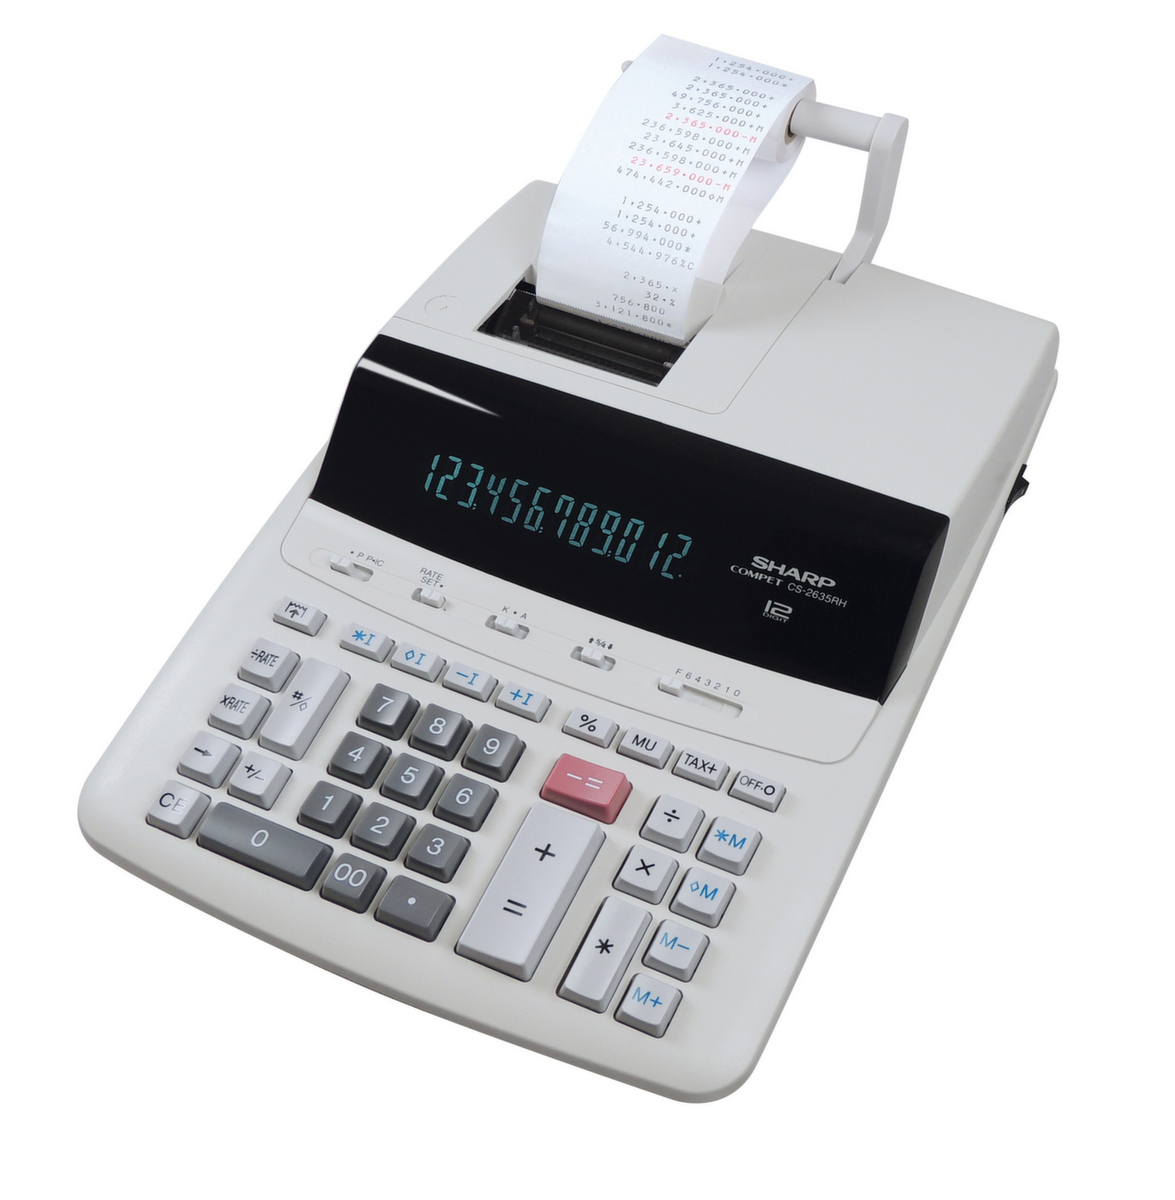 Sharp calculatrice de bureau CS-2635RH GY SE avec imprimante, affichage 12 chiffres  ZOOM